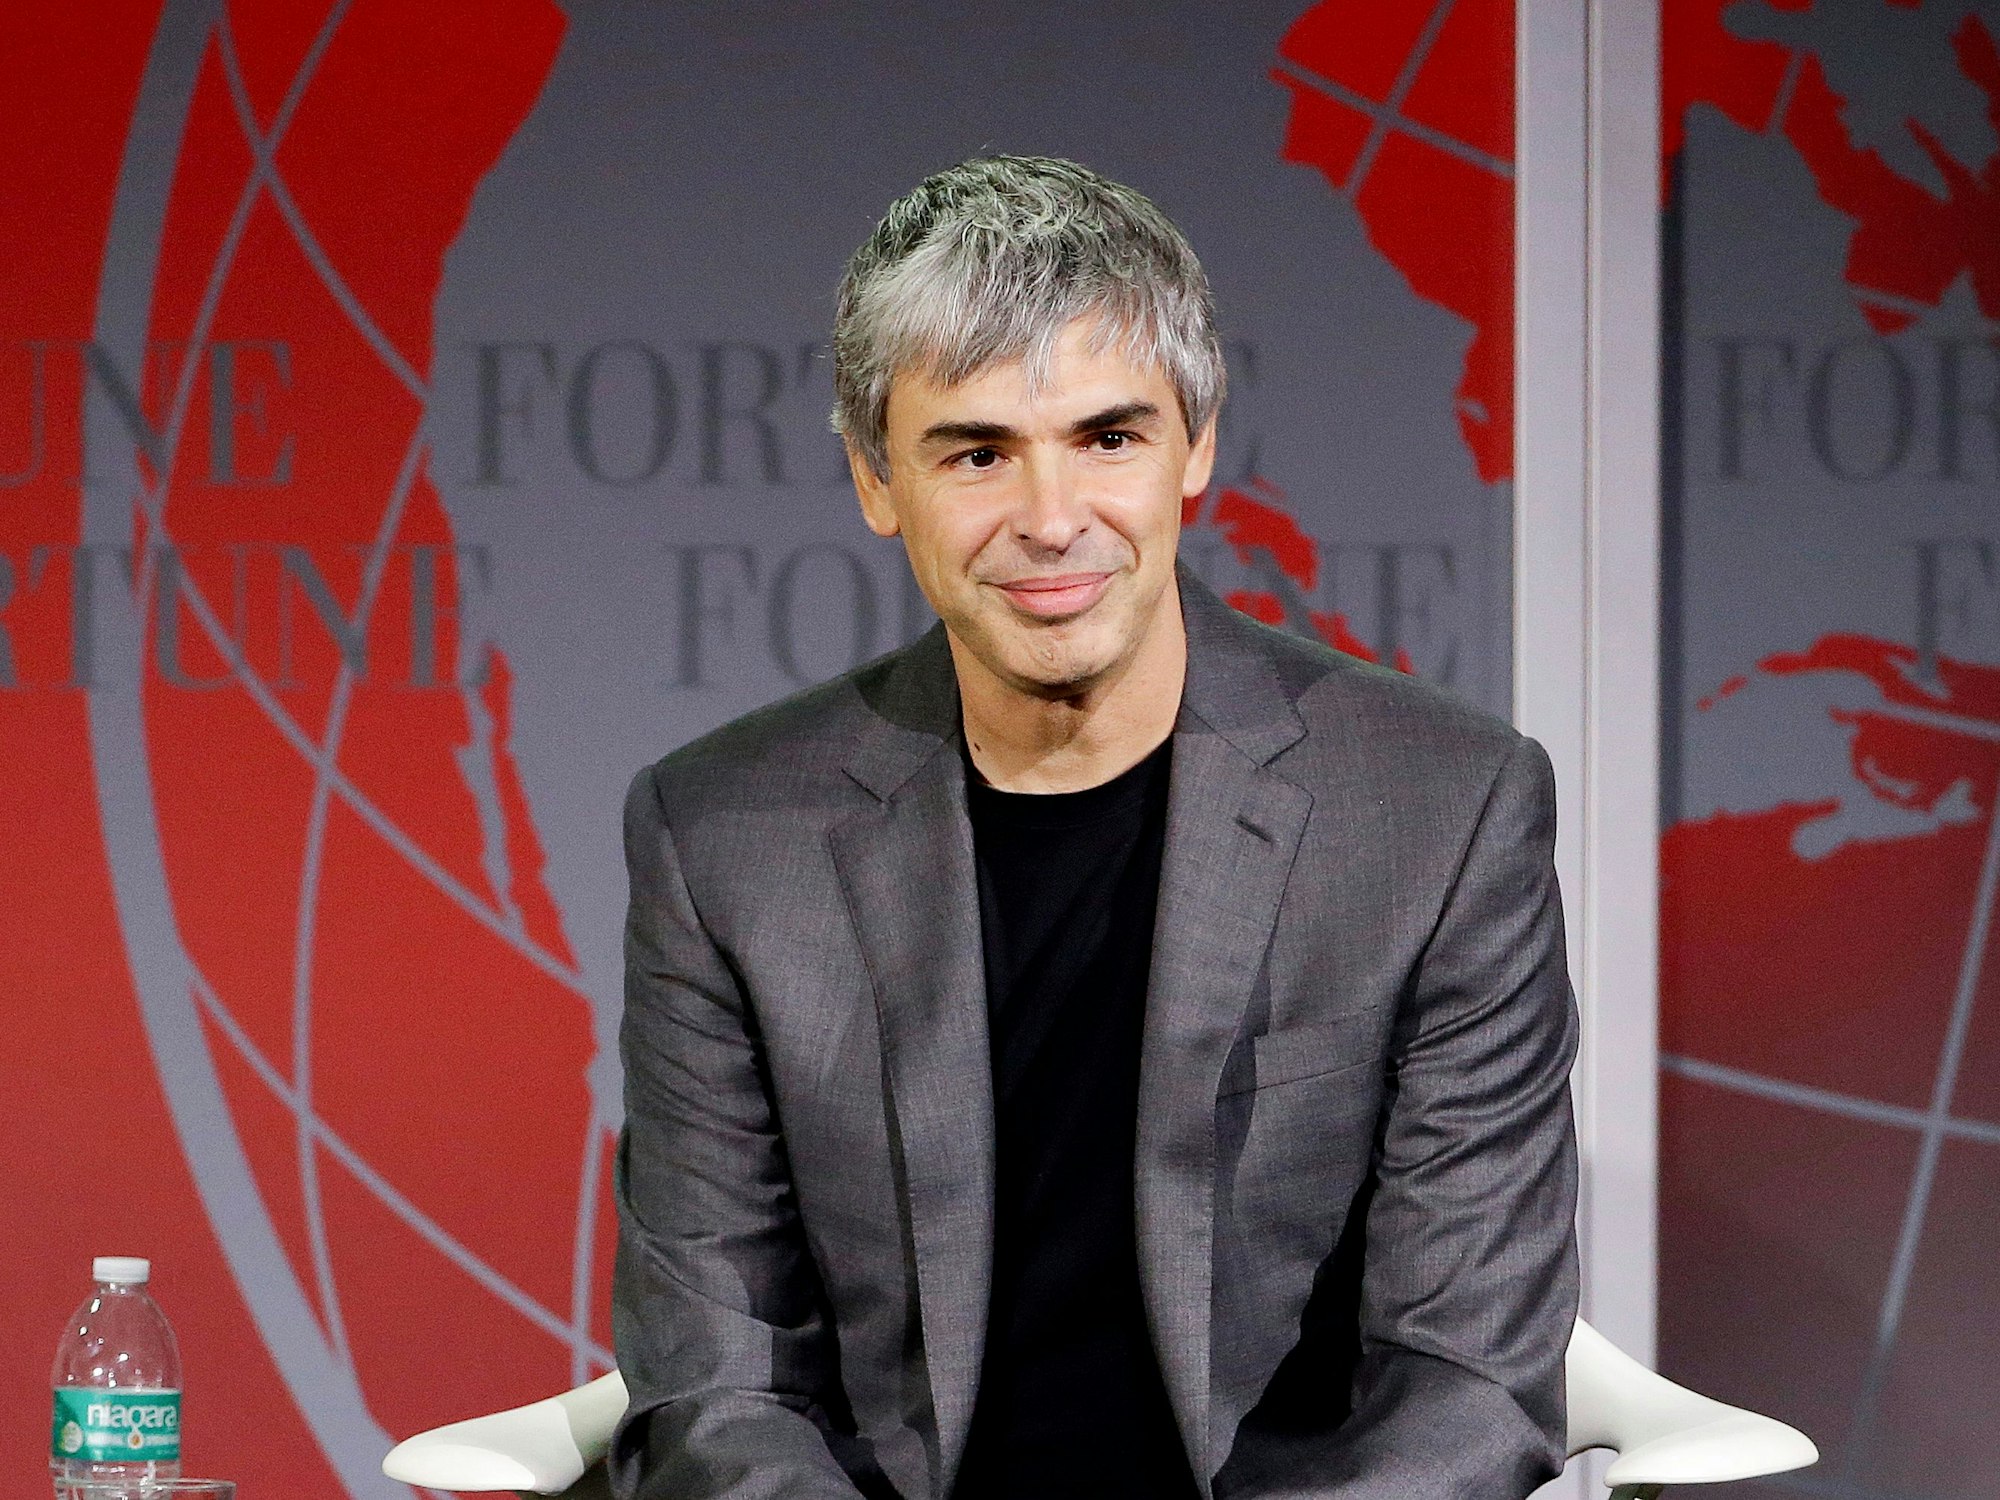 Alphabet-Unternehmensgründer Larry Page auf dem Fortune Global Forum, hier im November 2015 in San Francisco.